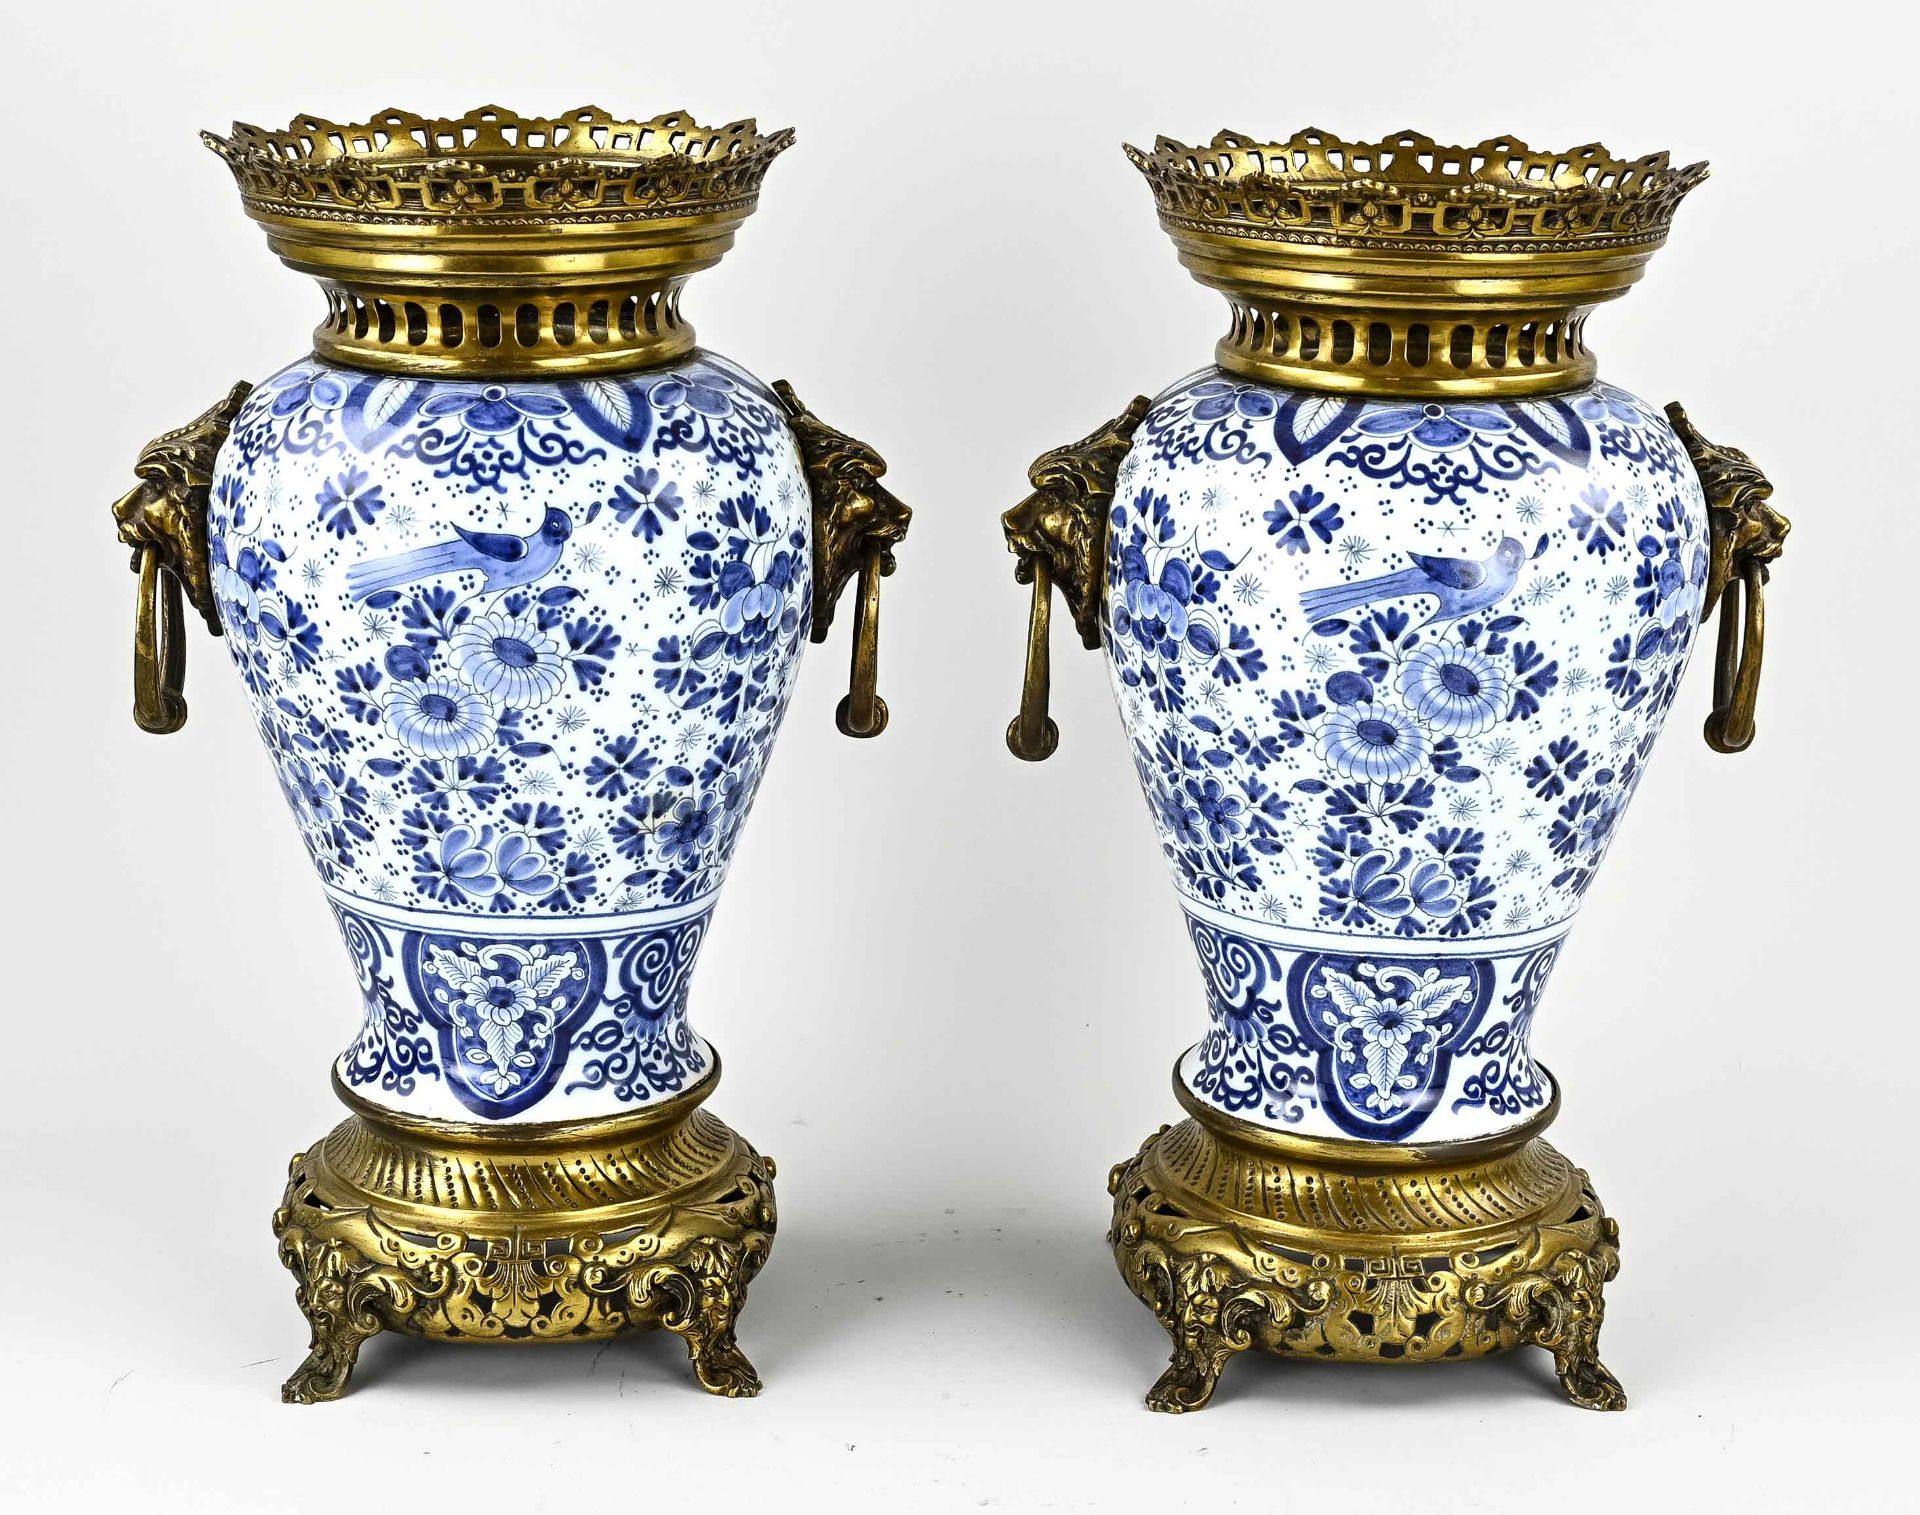 Two Delft show vases, H 37 cm.